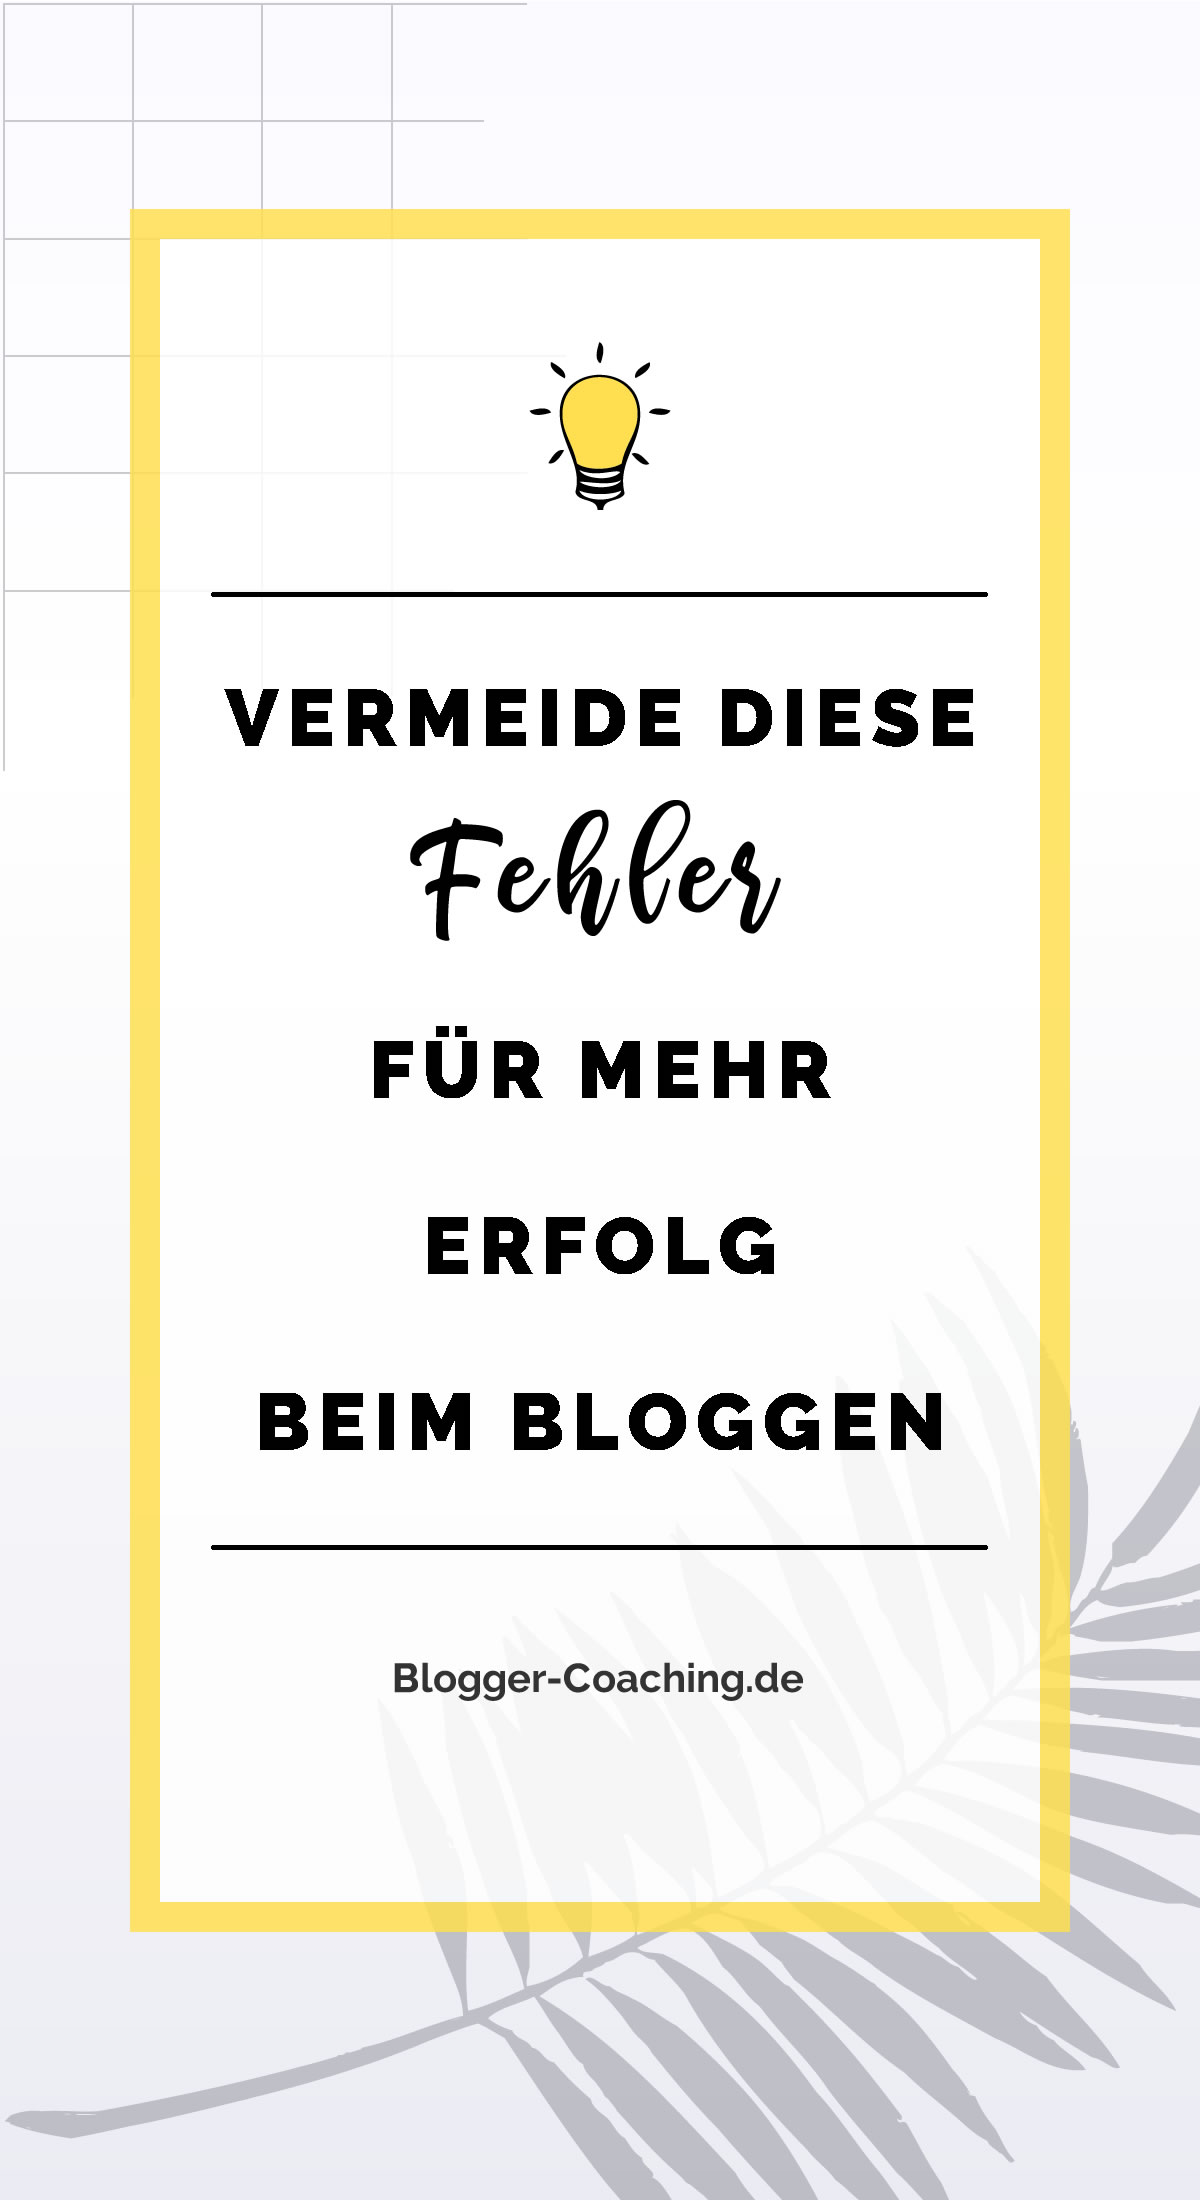 6 Anfängerfehler beim Bloggen und wie du sie vermeidest 2/3 | Blogger-Coaching.de - Erfolgreich bloggen & Geld verdienen #bloggen #erfolg